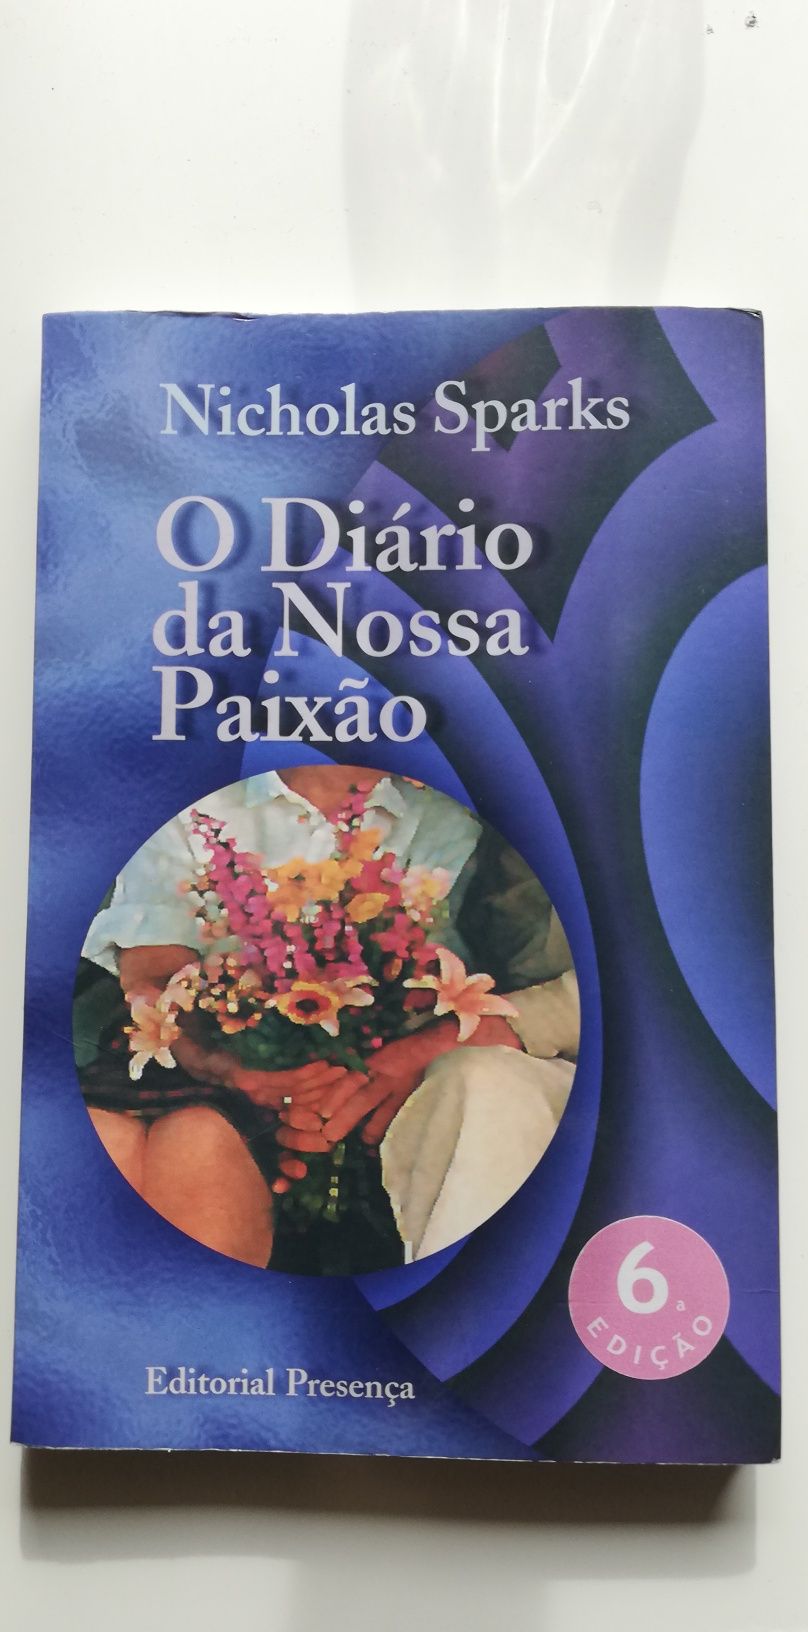 O diário da nossa paixão, de Nicholas Sparks